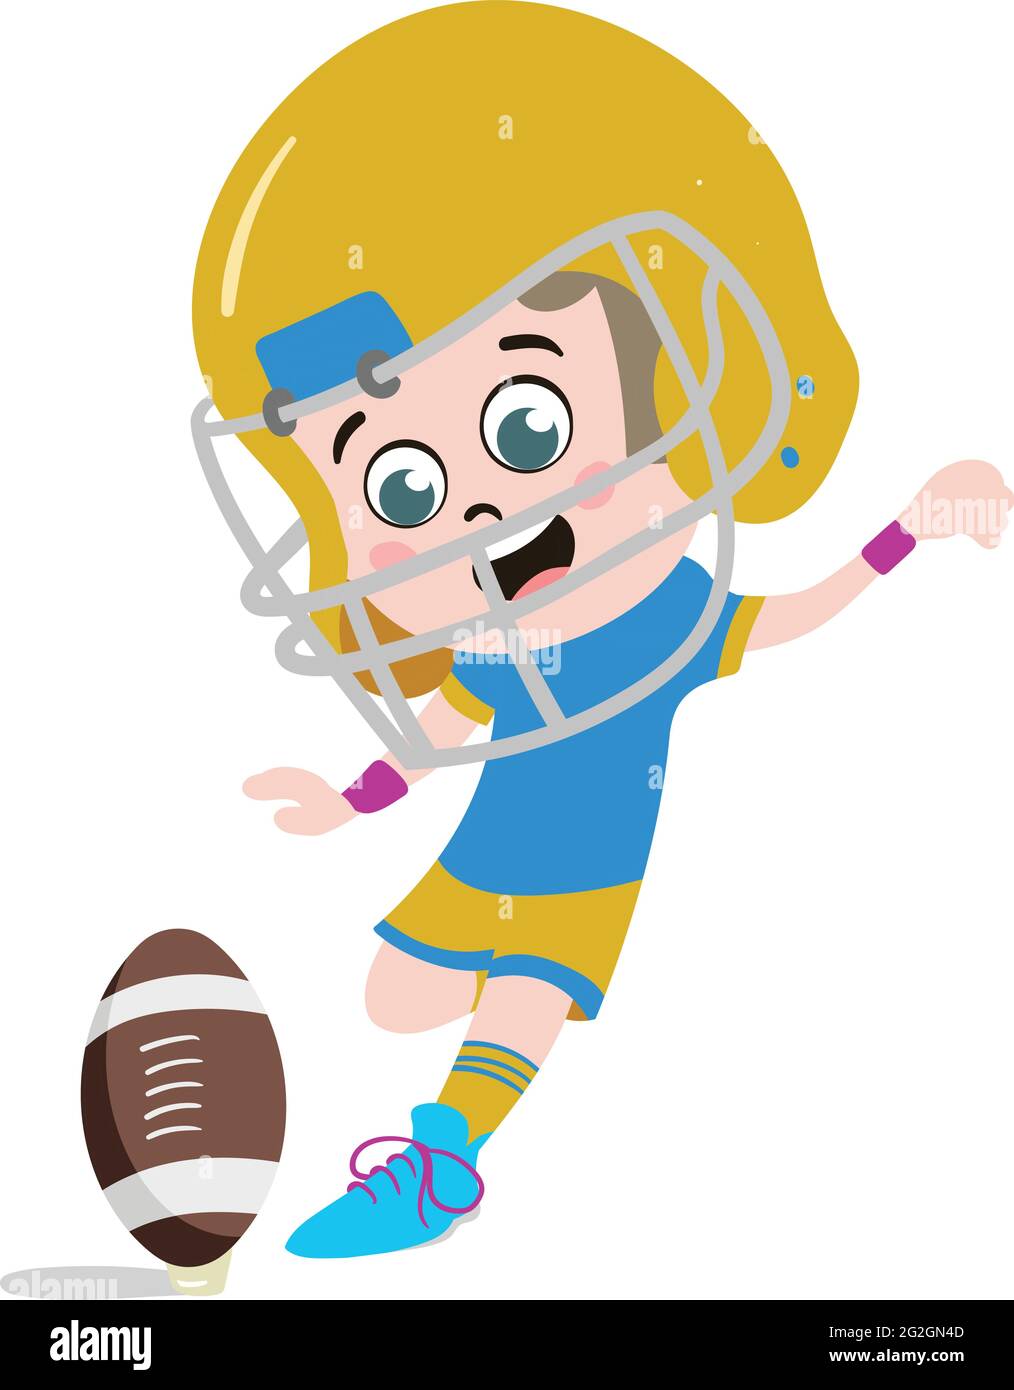 Ein niedliches und entzückendes Kind Charakter im Cartoon-Stil. Kindergarten Vorschule Kind als professioneller Rugby-Spieler gekleidet. Small Kid tritt den Ball entgegen Stock Vektor